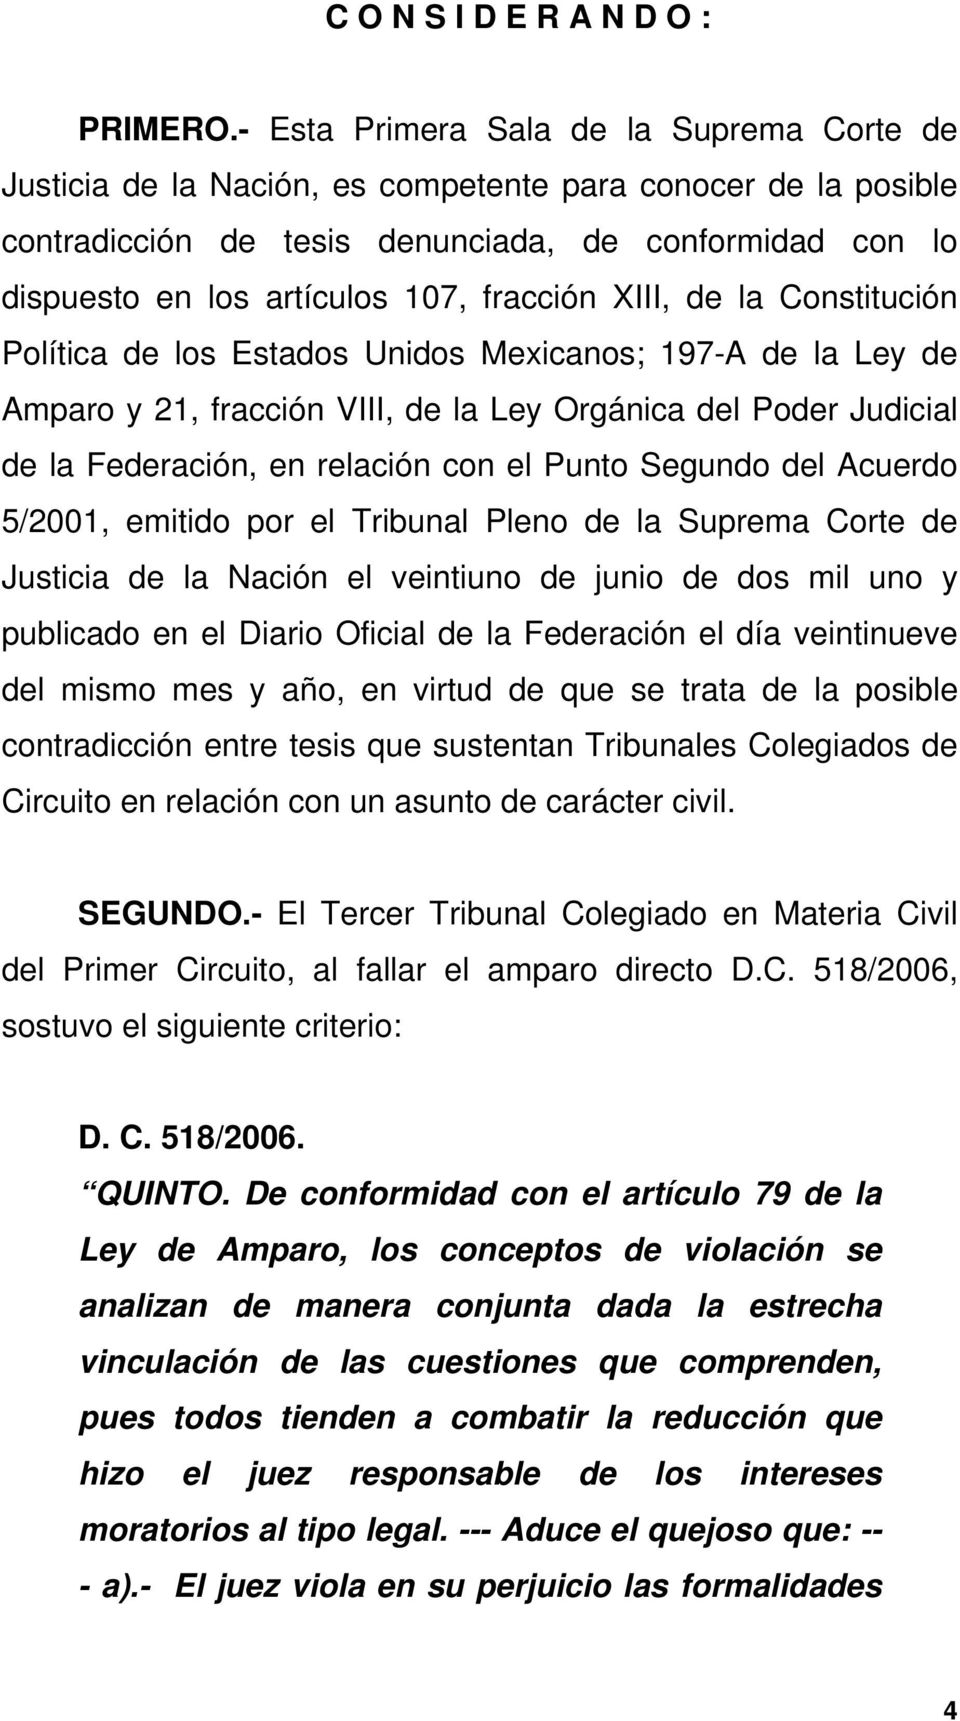 fracción XIII, de la Constitución Política de los Estados Unidos Mexicanos; 197-A de la Ley de Amparo y 21, fracción VIII, de la Ley Orgánica del Poder Judicial de la Federación, en relación con el